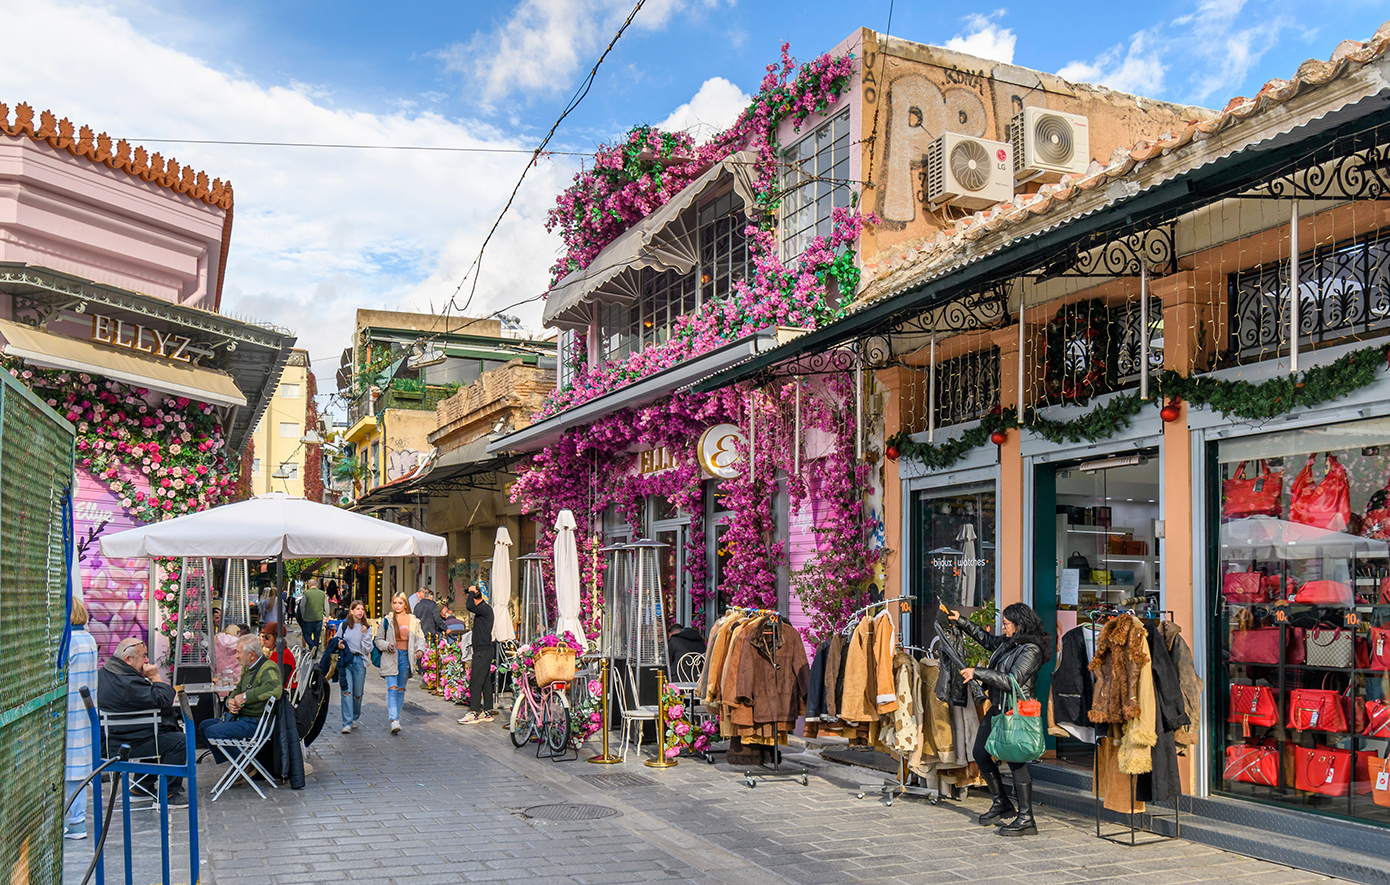 Η Αθήνα είναι η πόλη με την καλύτερη μυρωδιά στον κόσμο – Τι την έφερε στην κορυφή της λίστας